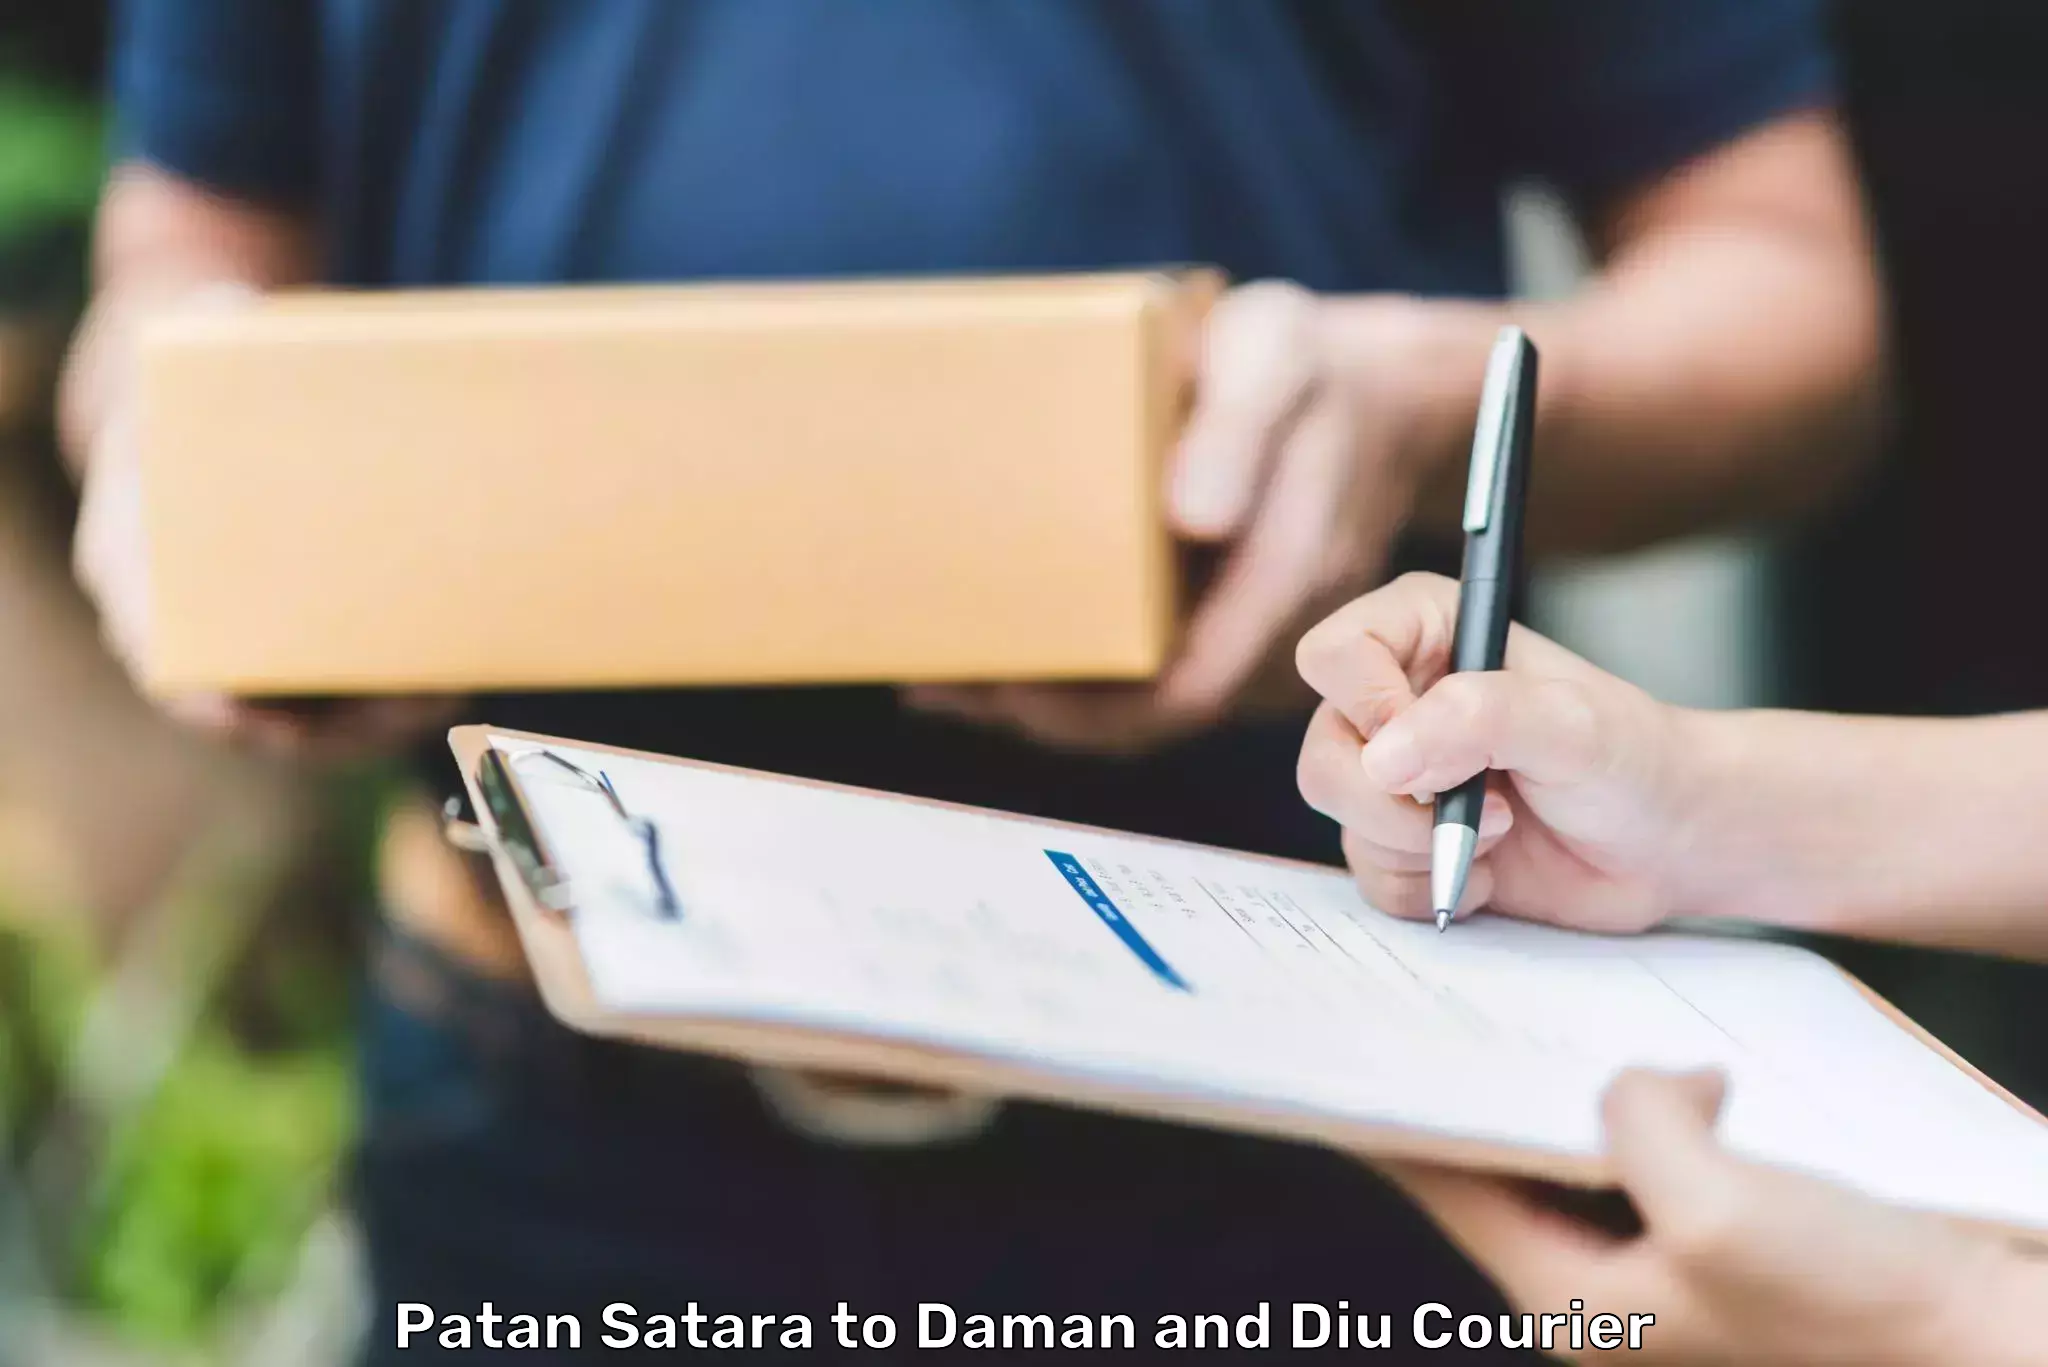 Advanced courier platforms Patan Satara to Daman and Diu